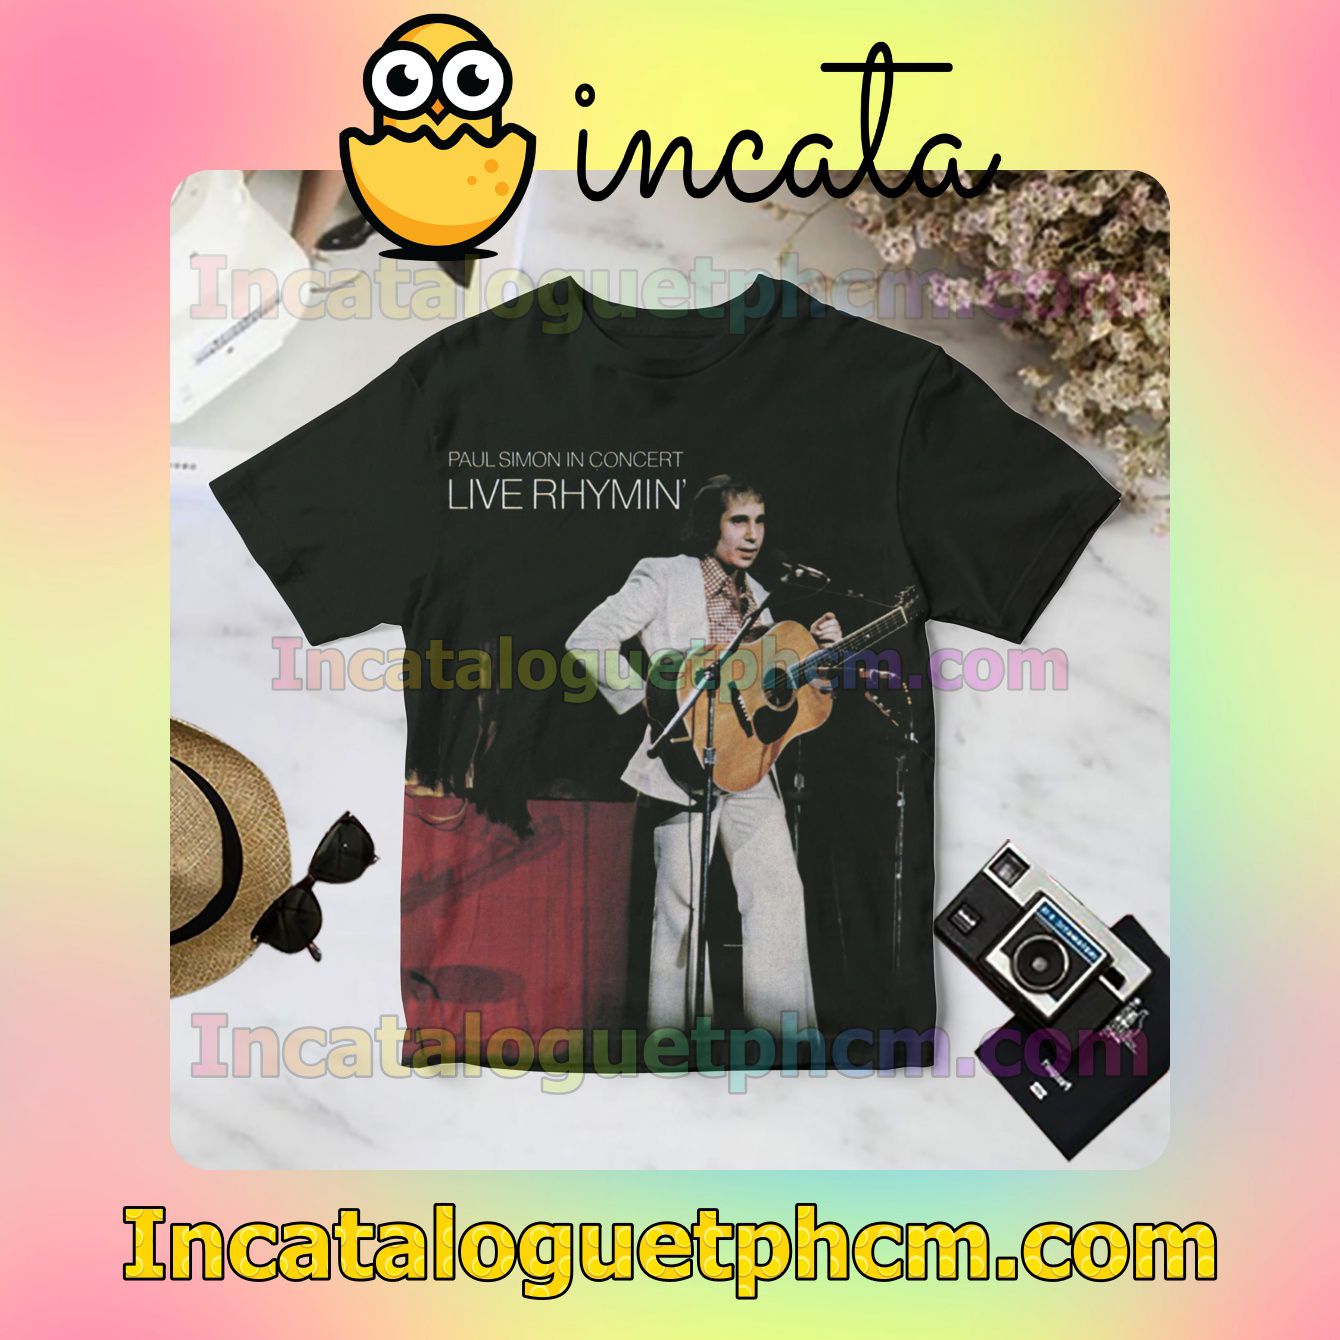 Paul Simon In Concert Live Rhymin' Album Cover Black For Fan Shirt